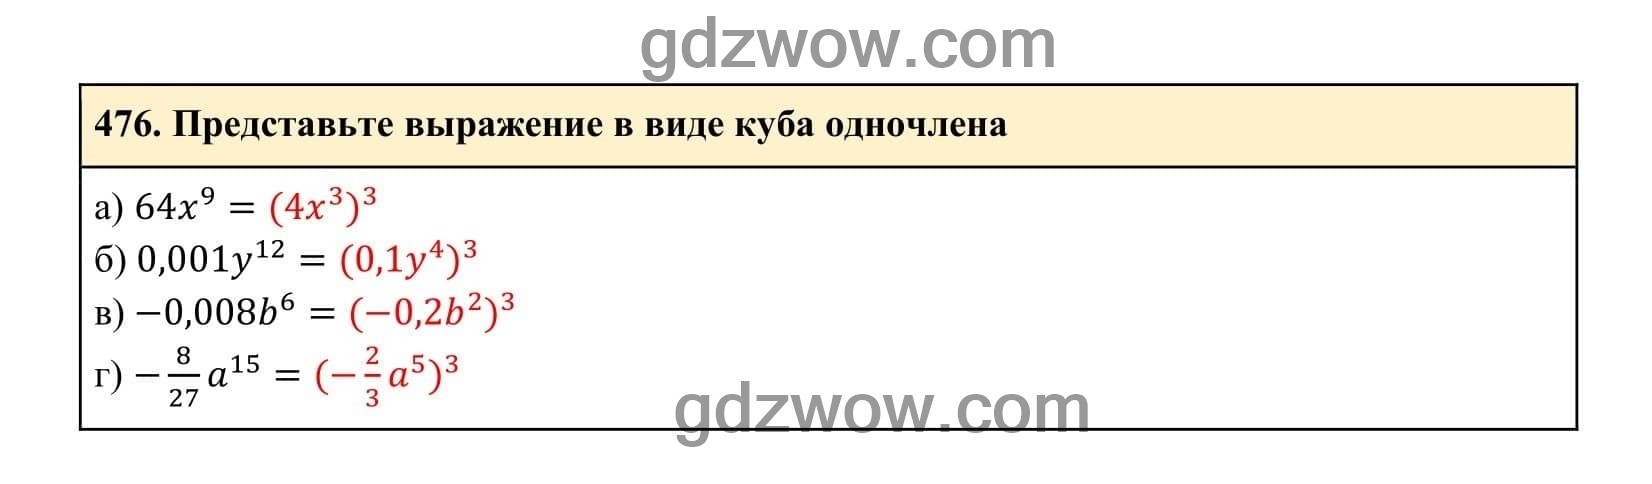 Упражнение 476 - ГДЗ по Алгебре 7 класс Учебник Макарычев (решебник) - GDZwow